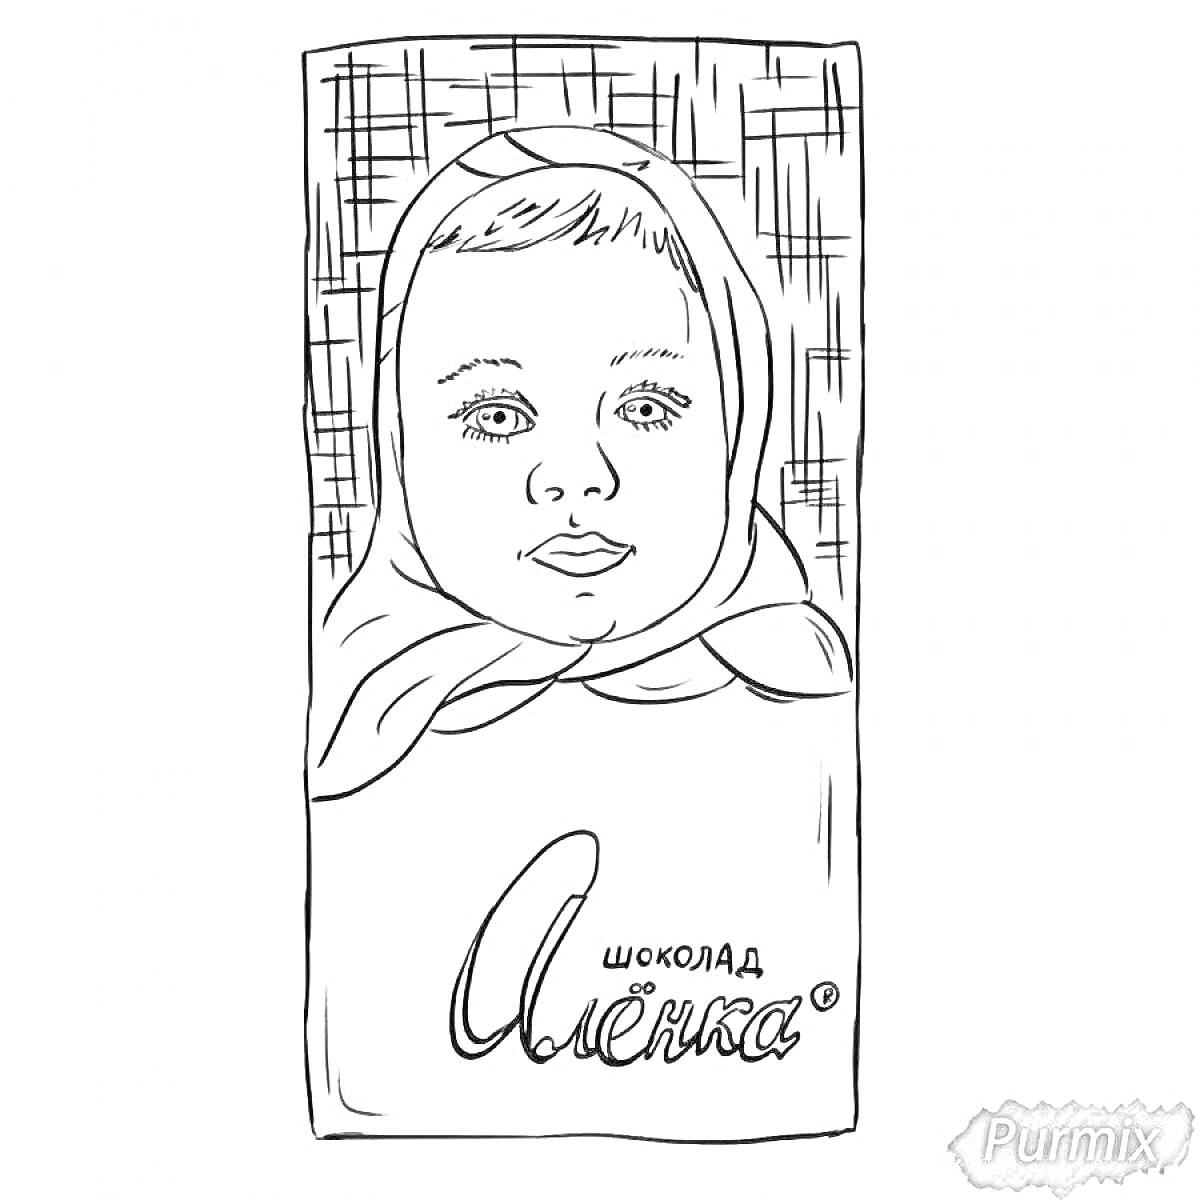 Плитка шоколада с изображением ребенка в платочке и надписью 